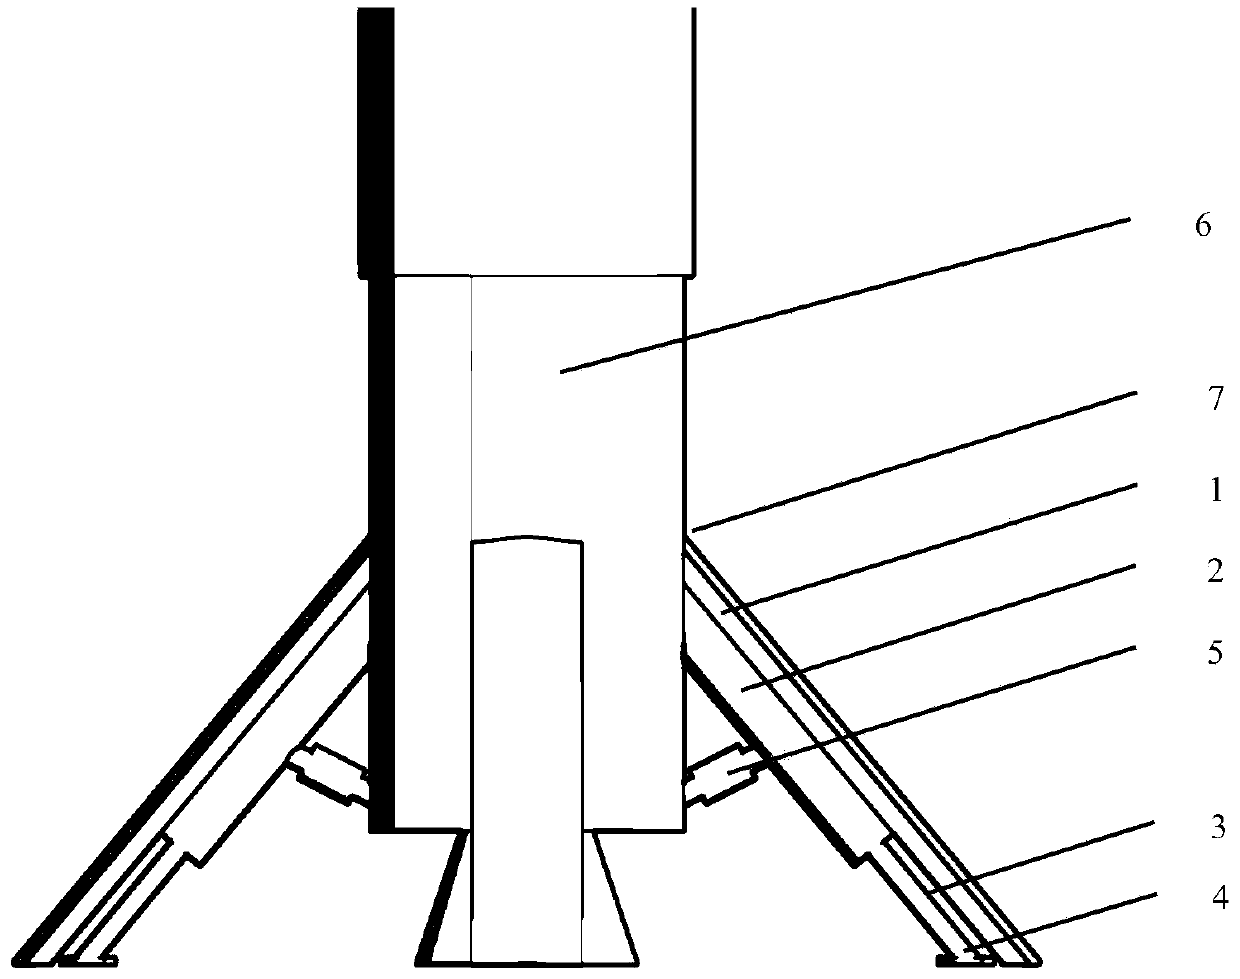 Reusable carrier rocket vertical landing recovery support mechanism